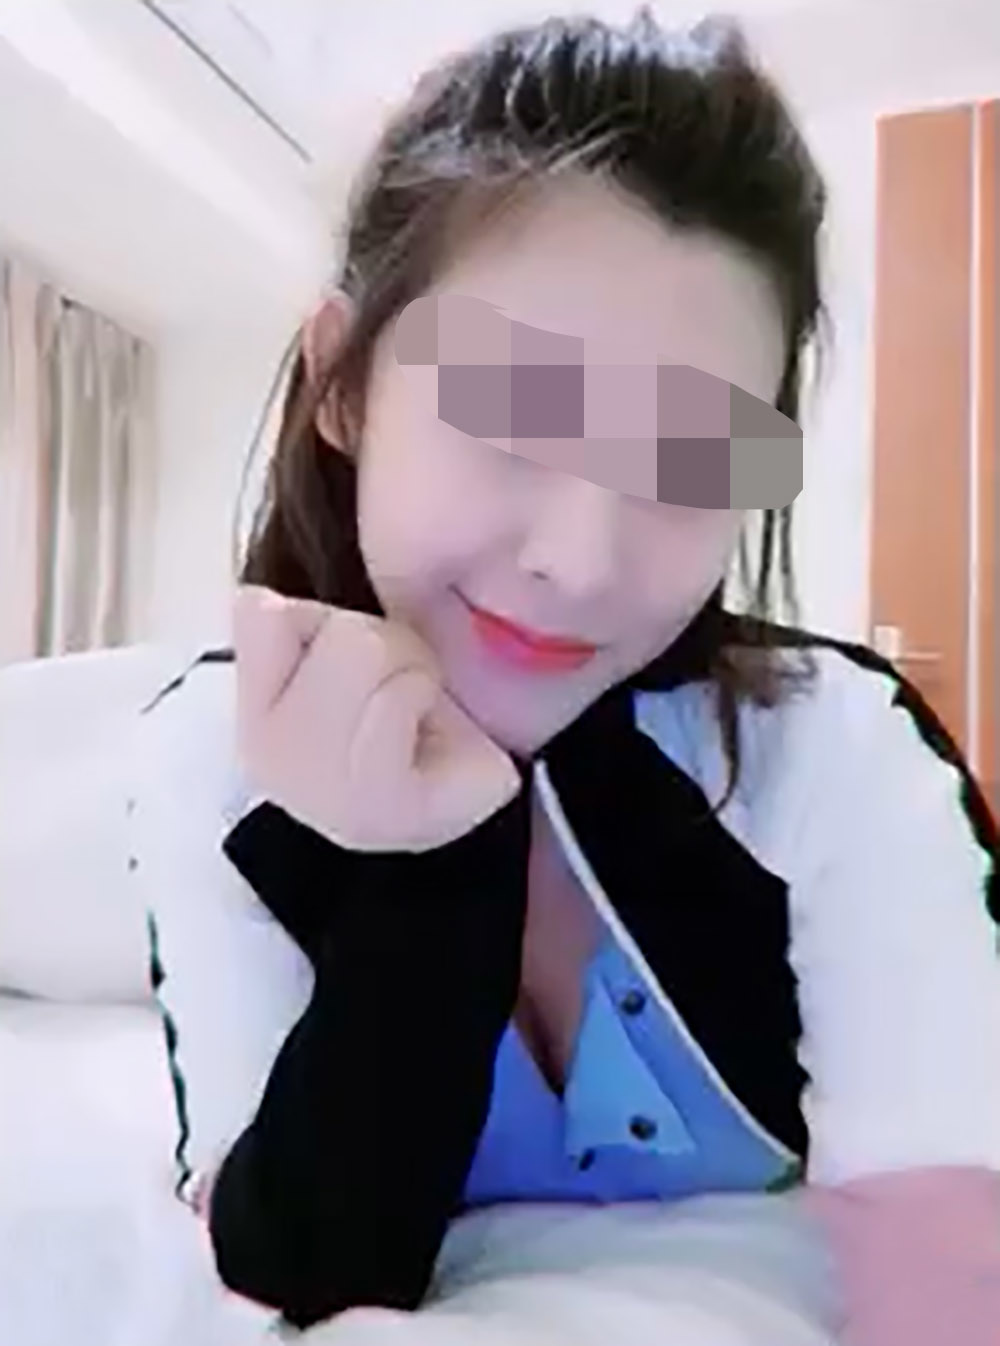 Sex taped in Fuzhou